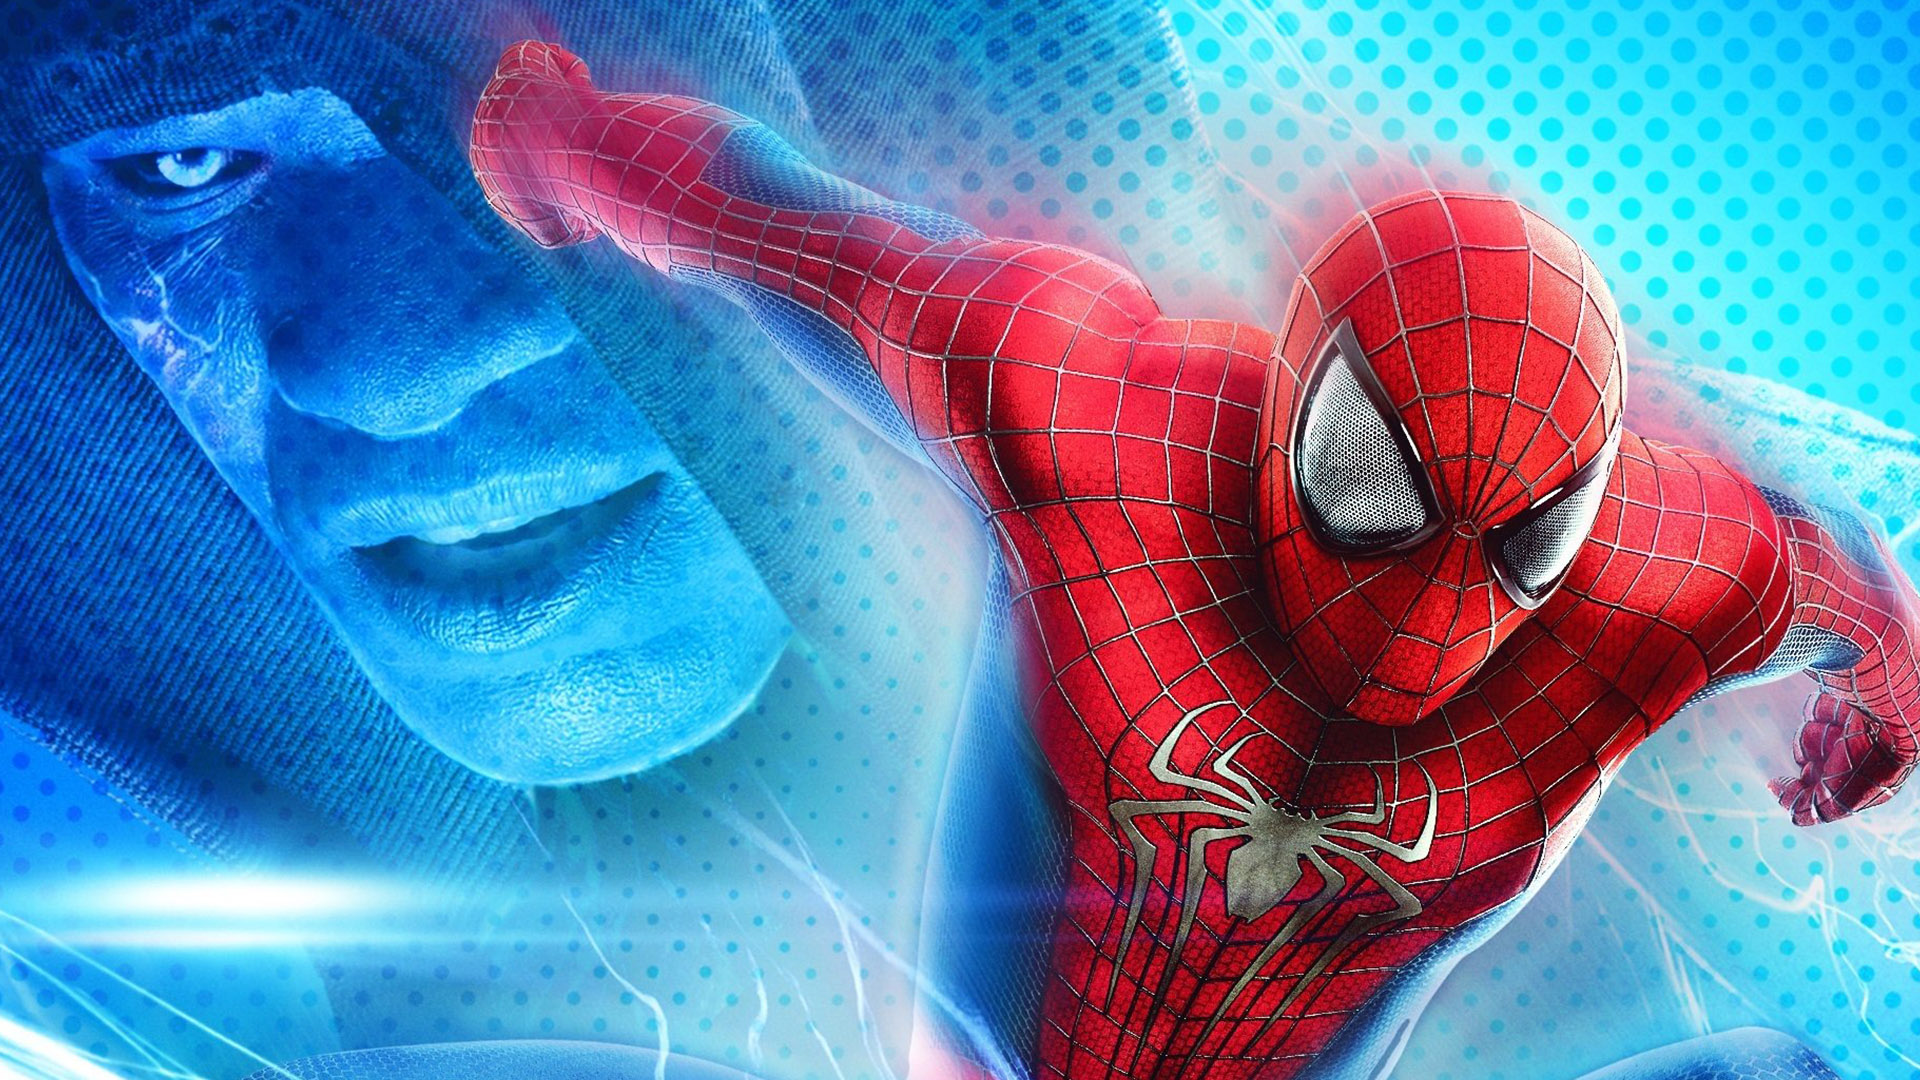 10 New Spider Man 2 Wallpaper FULL HD 1080p For PC Desktop 